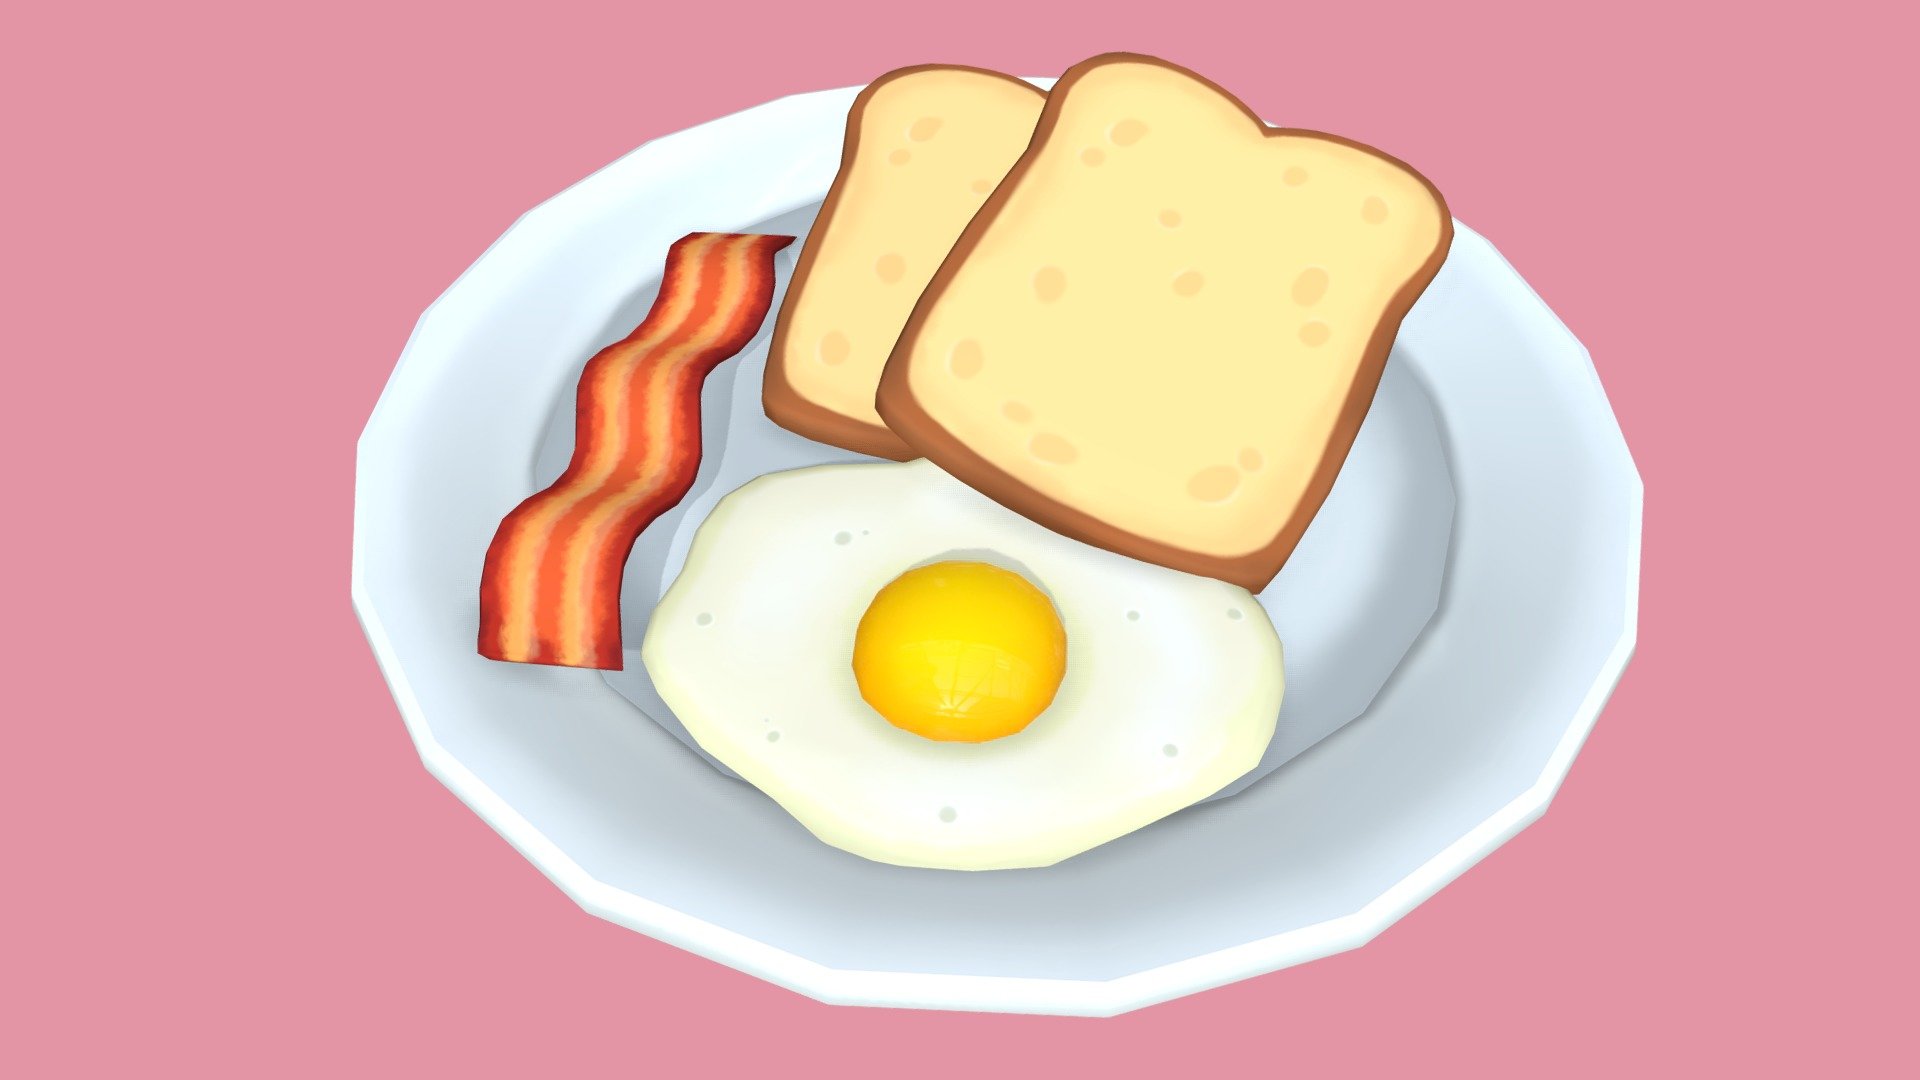 Little plate of yummy breakfast to make any morning happy! - Breakfast - 3D model by kenzeebyrne 3d model